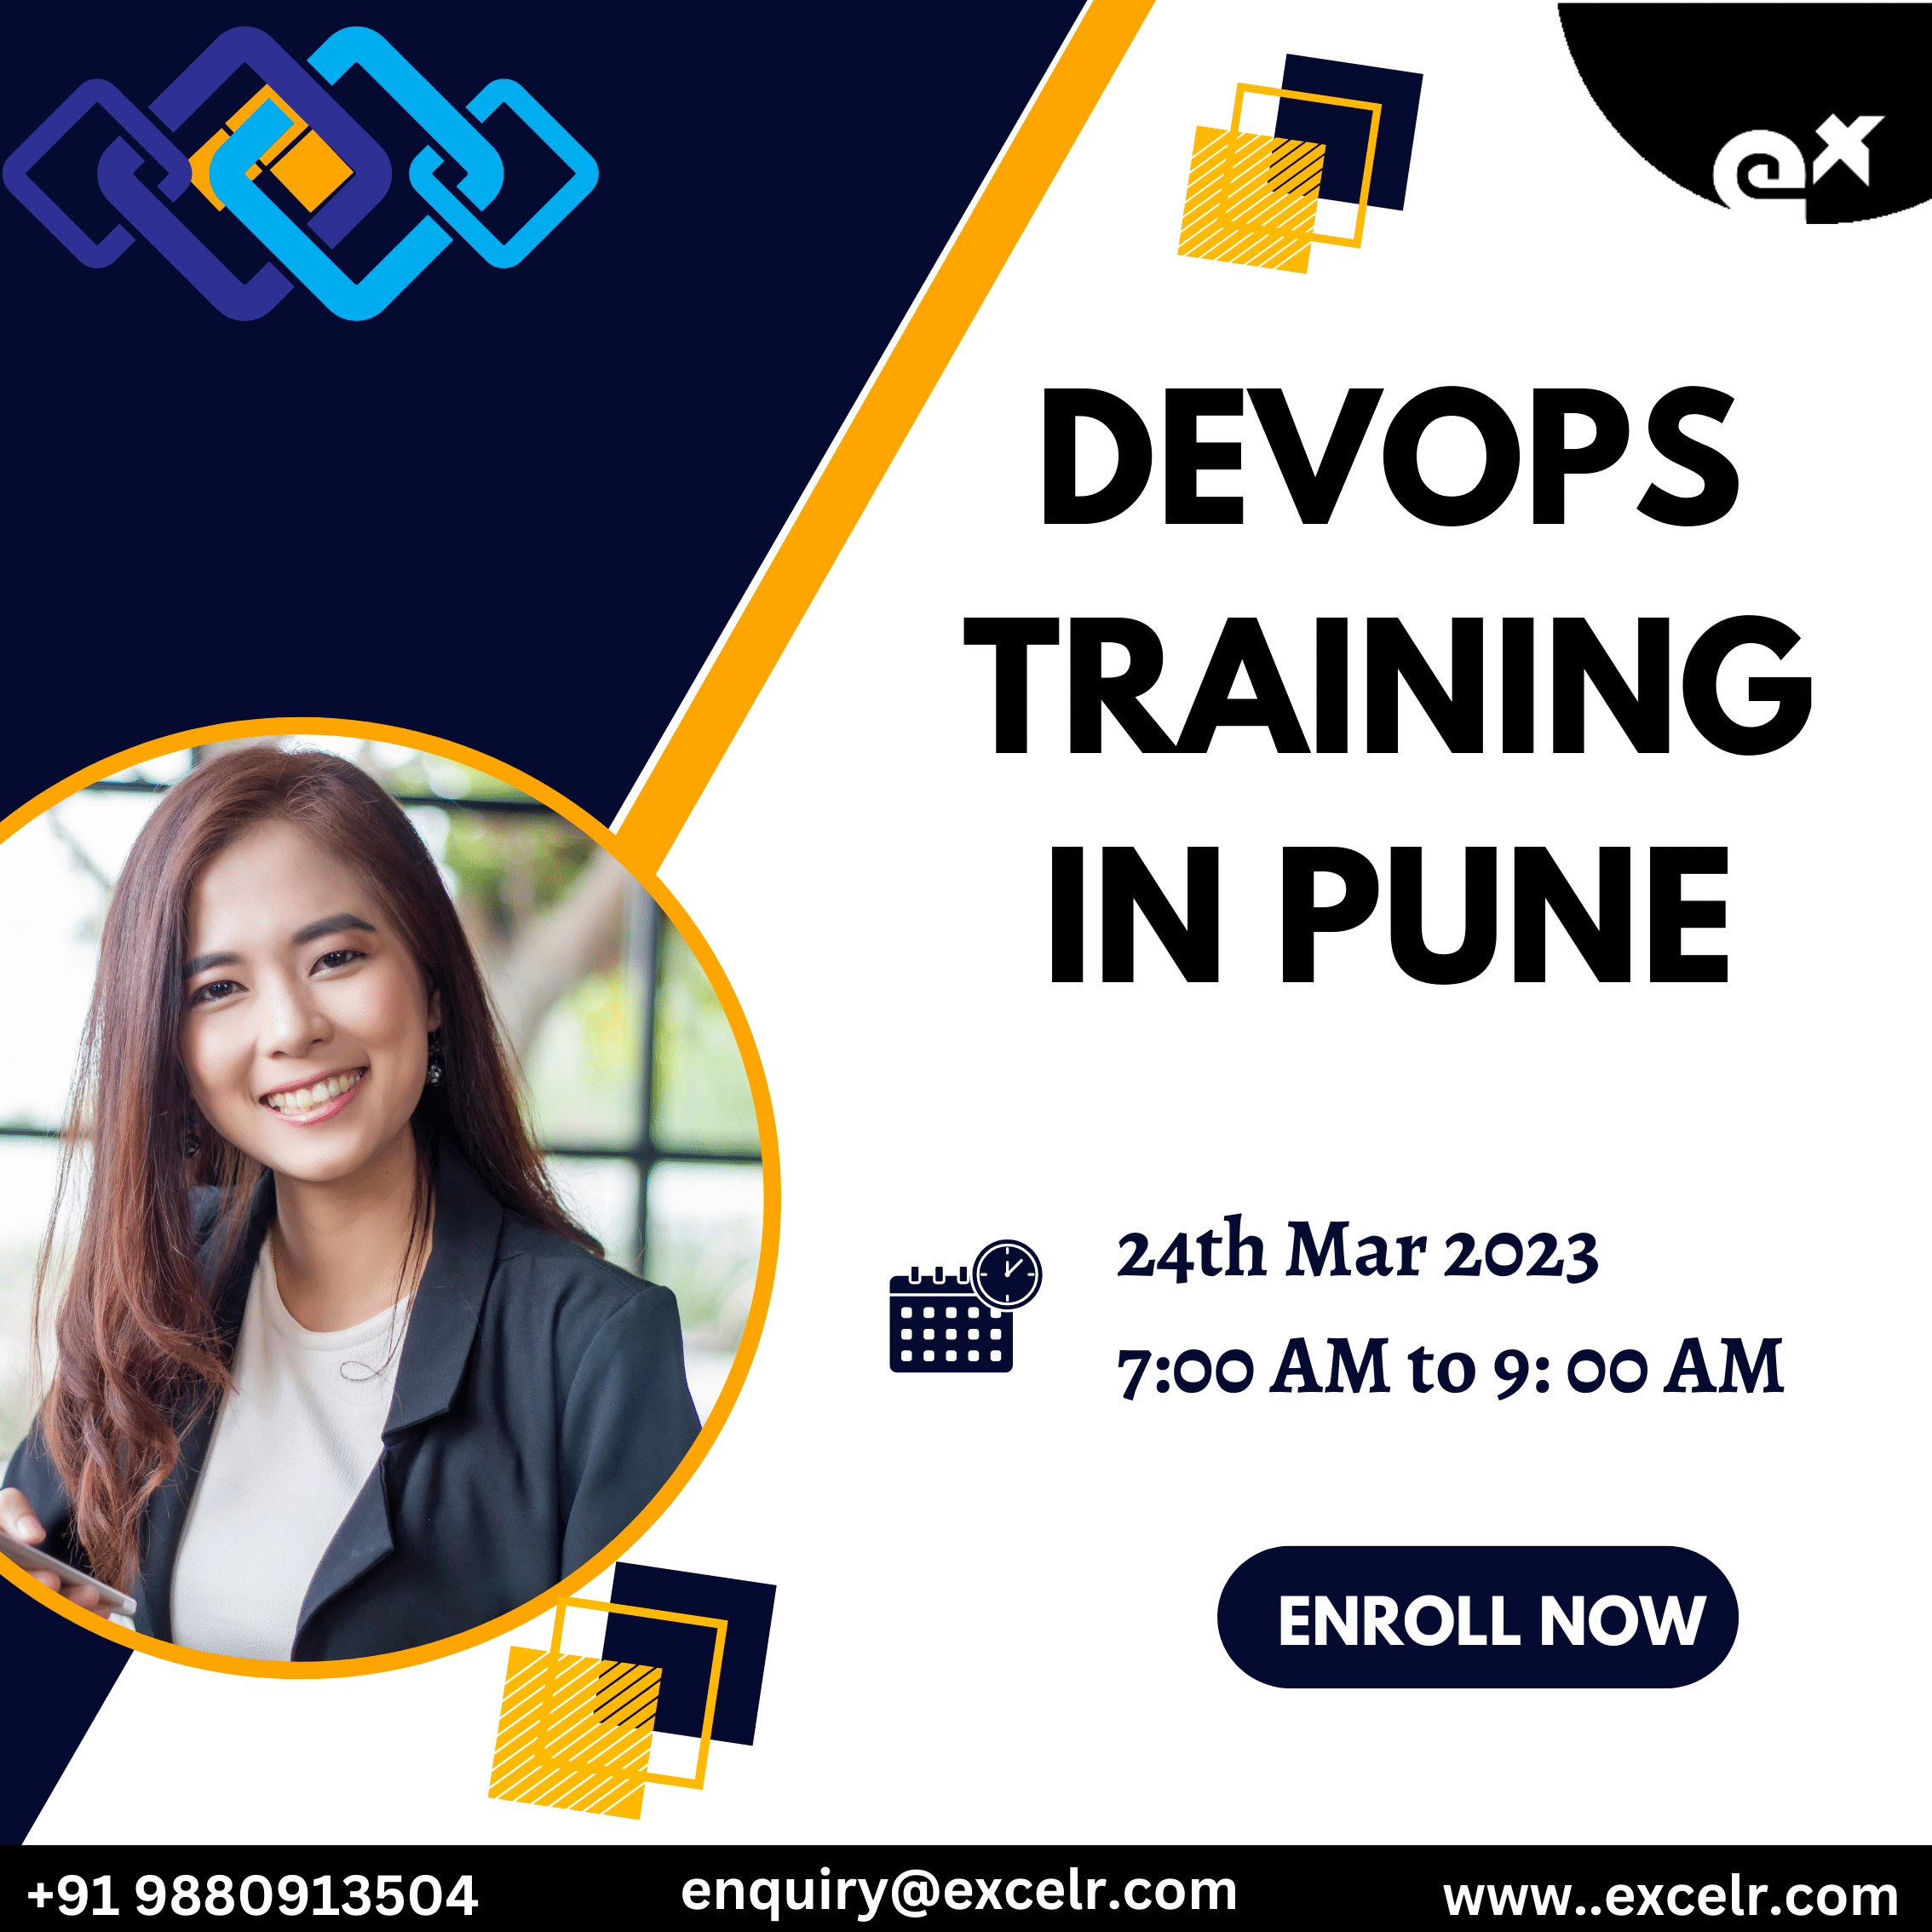 Devops Training In Pune, Online Event